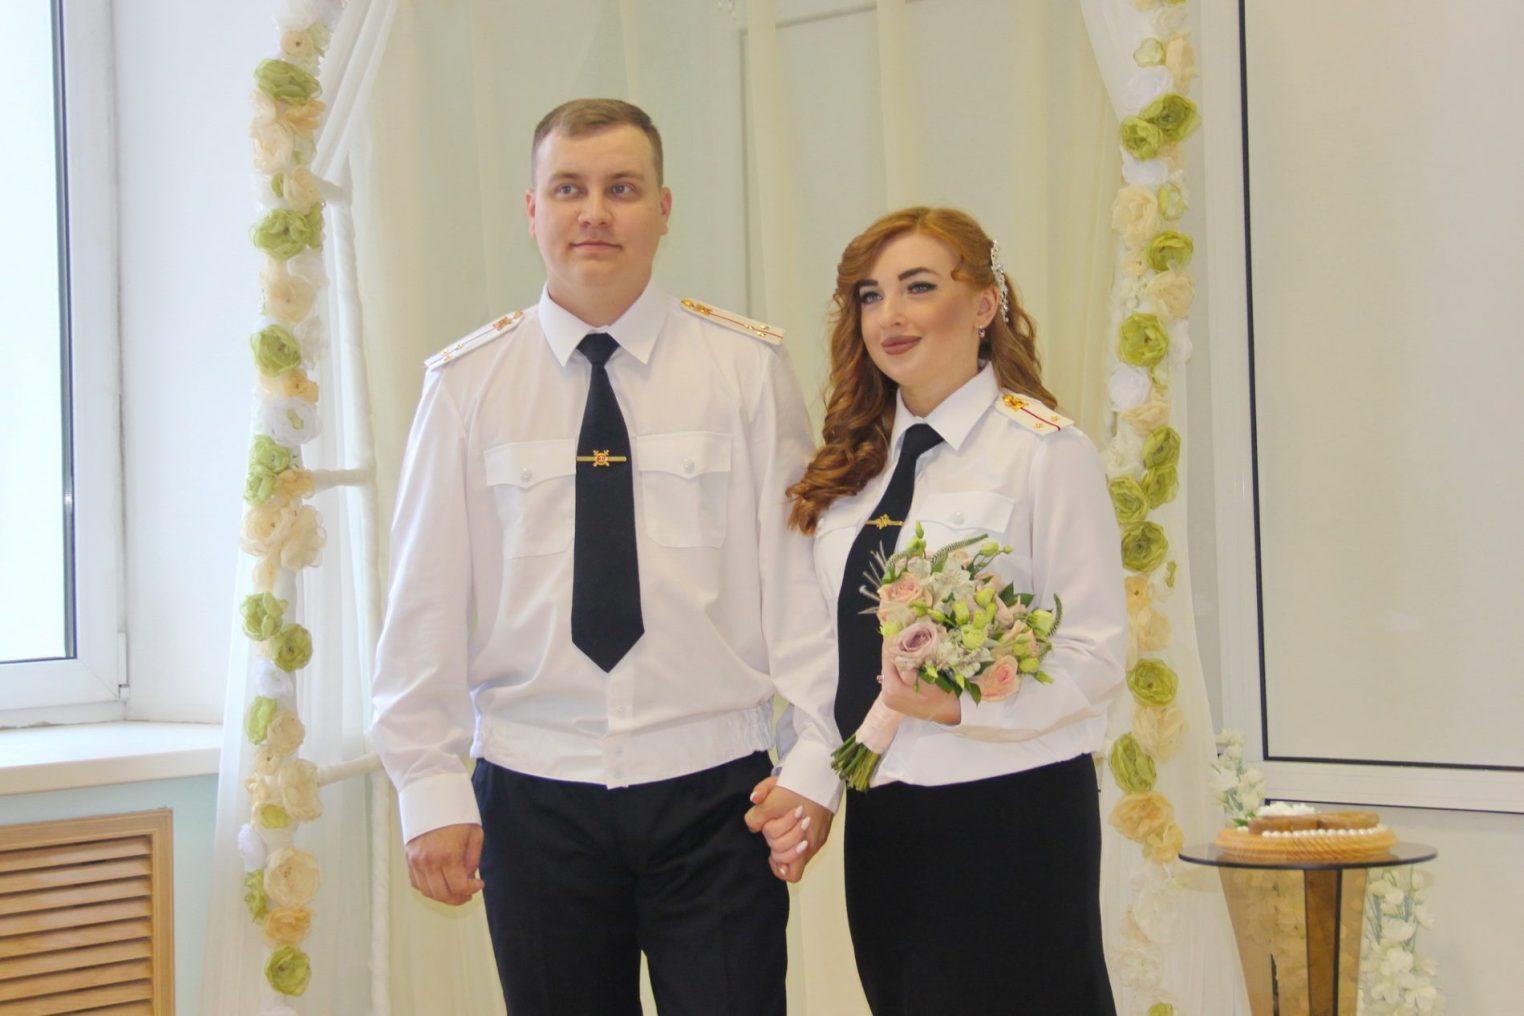 Без фаты и фрака: полицейские из Костромы поженились в парадной форме одежды